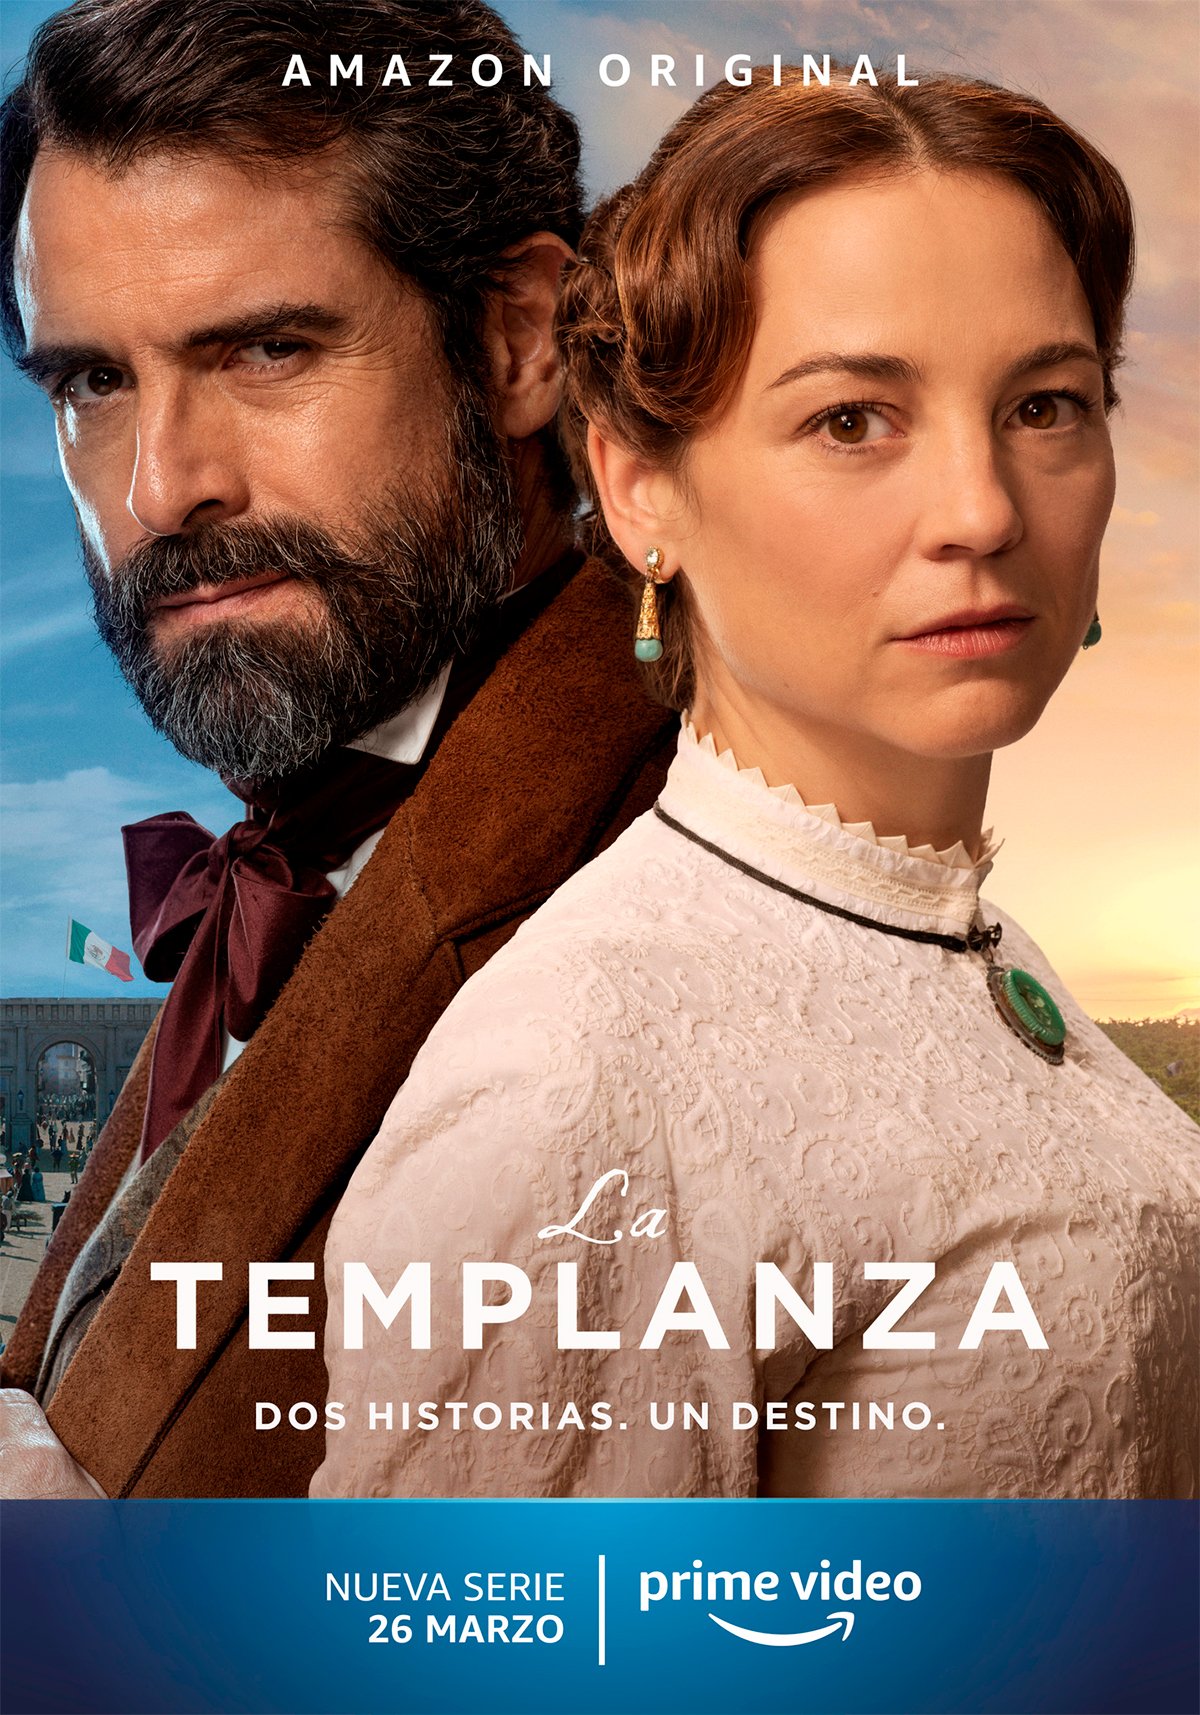 [心得] 榮光歲月 La Templanza (雷) Amazon 西班牙時代劇